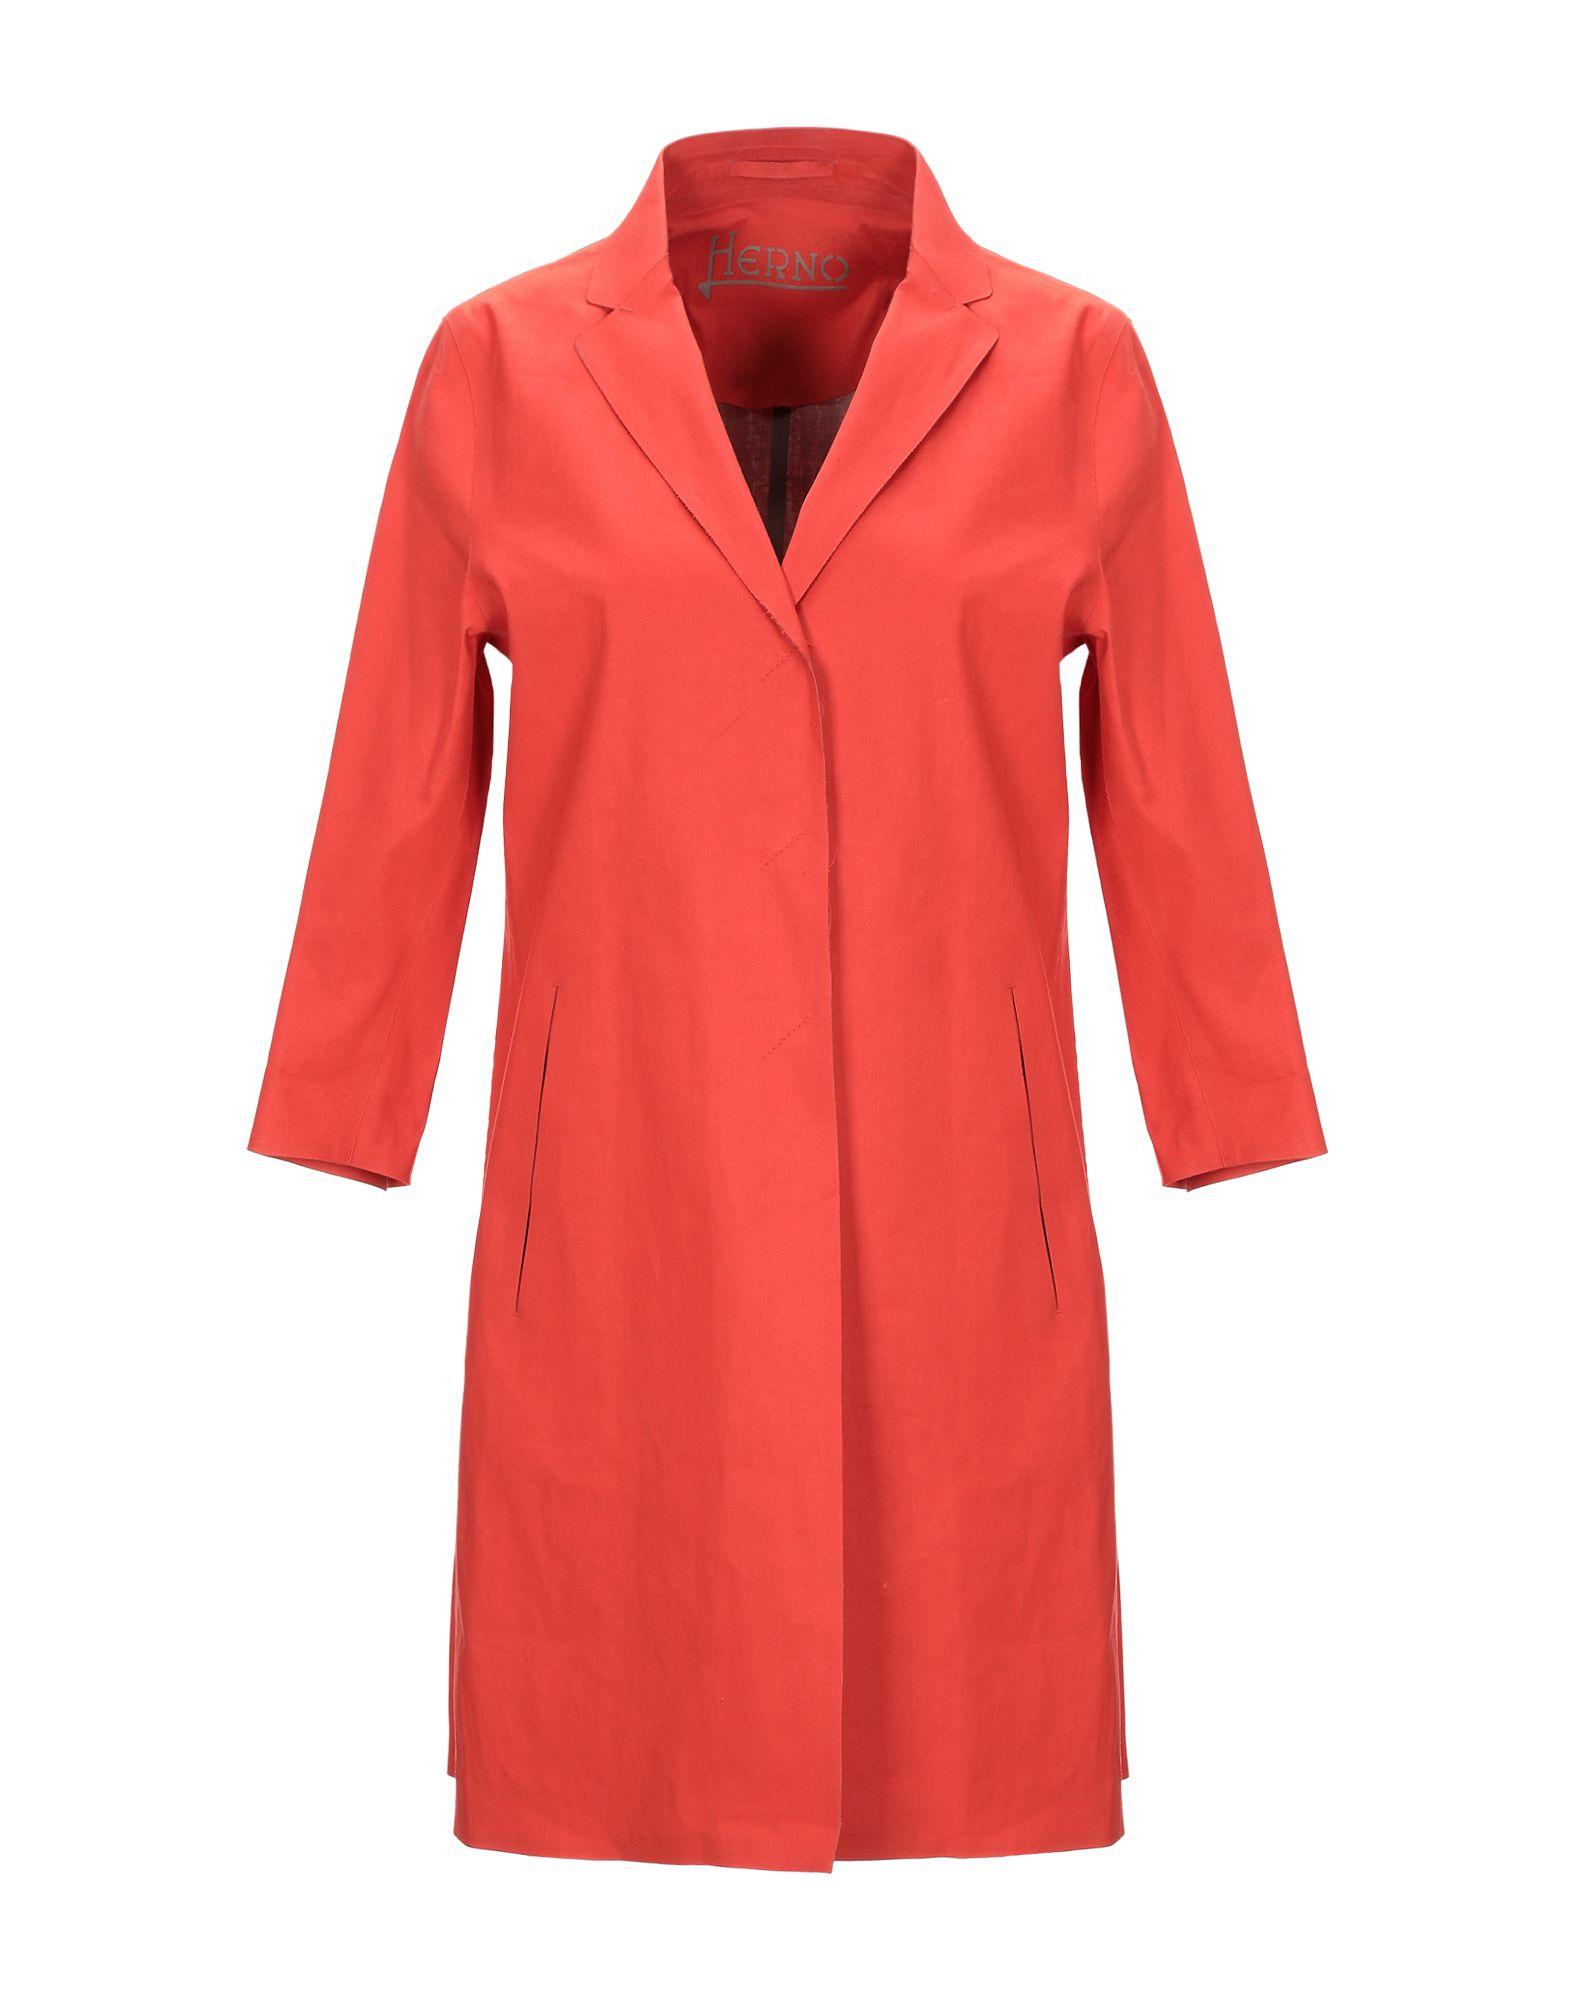 Herno Cotton Overcoat in Orange - Lyst